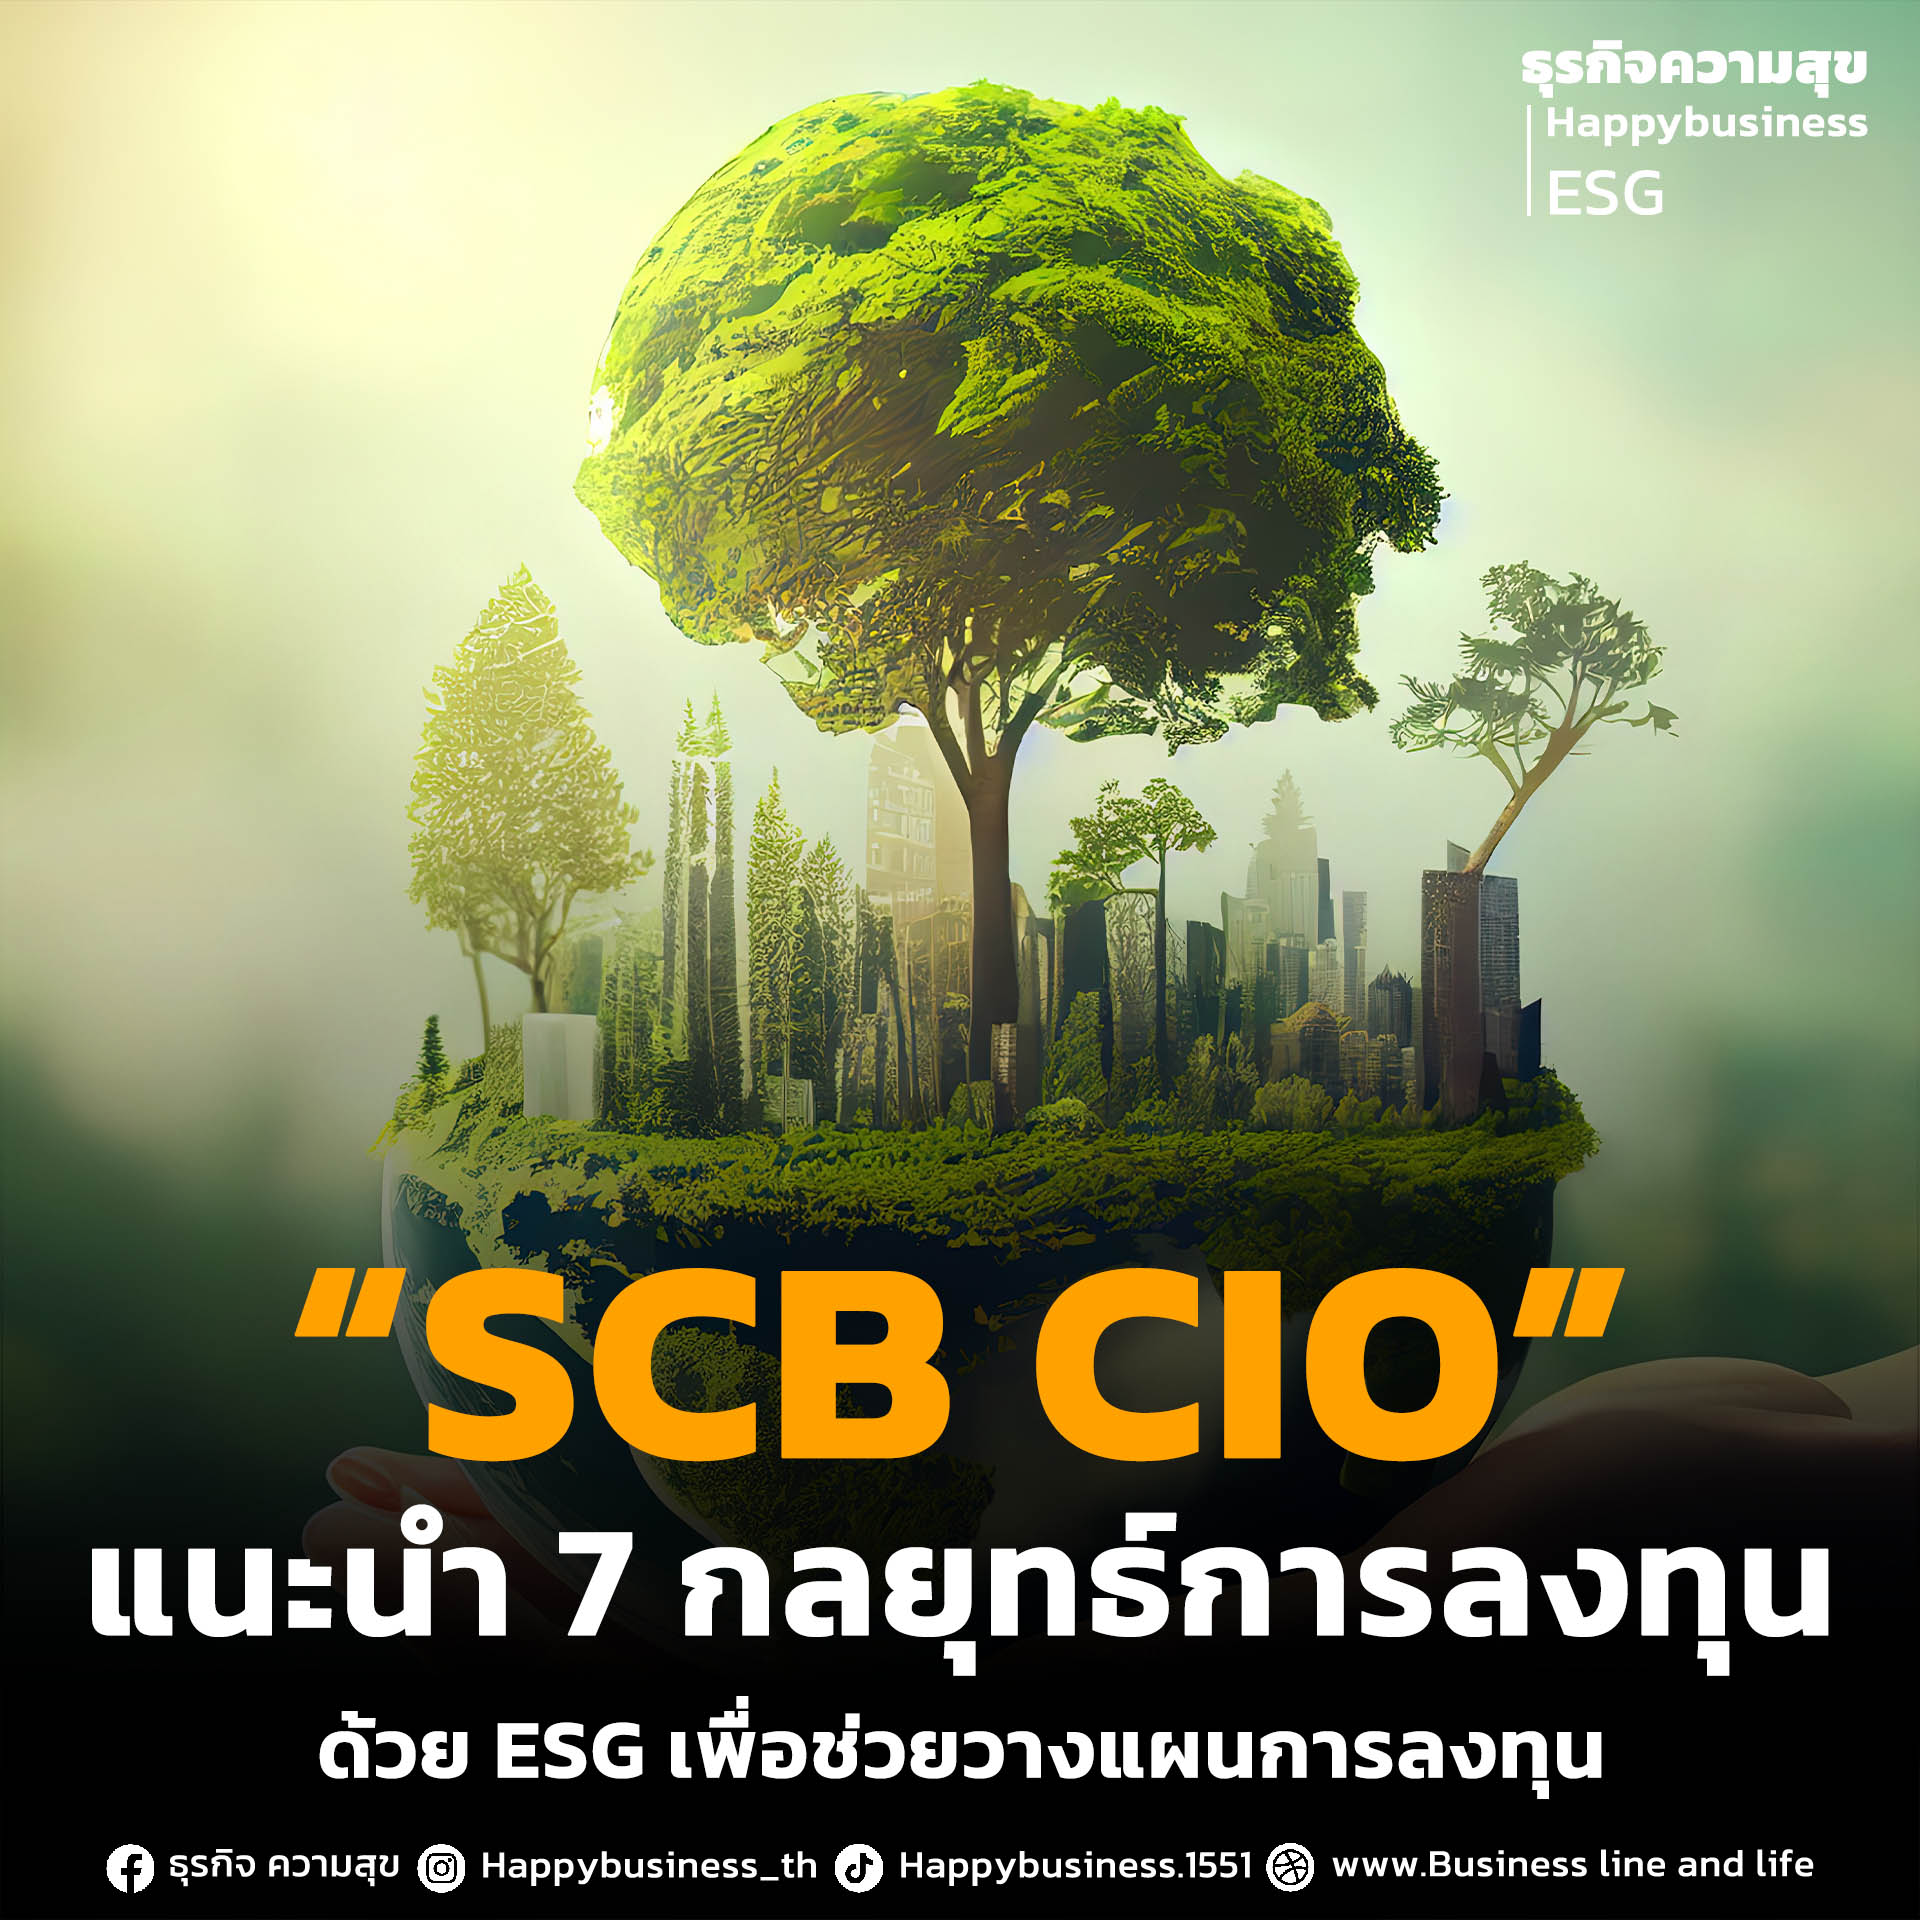 “SCB CIO”  แนะนำ 7 กลยุทธ์การลงทุน ด้วย ESG เพื่อช่วยวางแผนการลงทุน